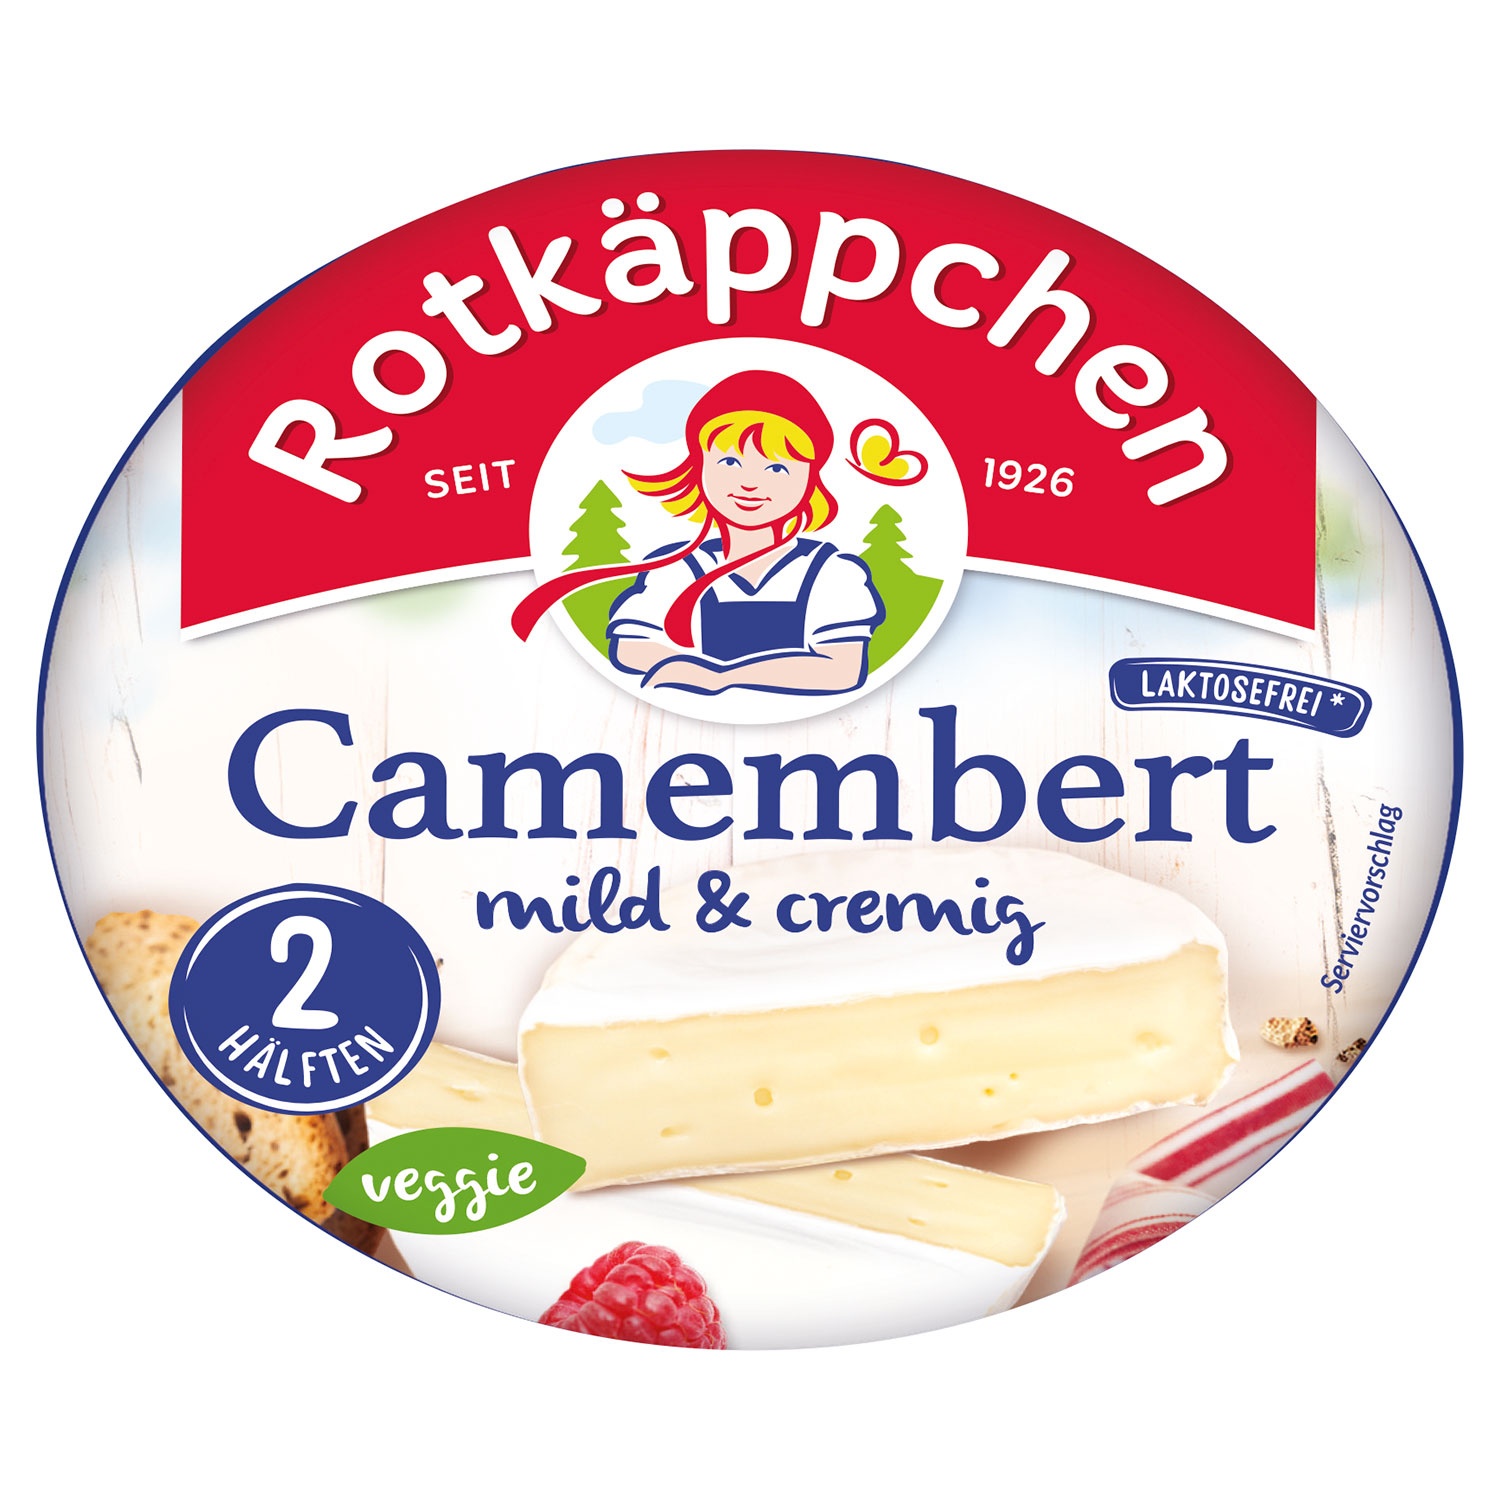 ROTKÄPPCHEN Camembert 125 g